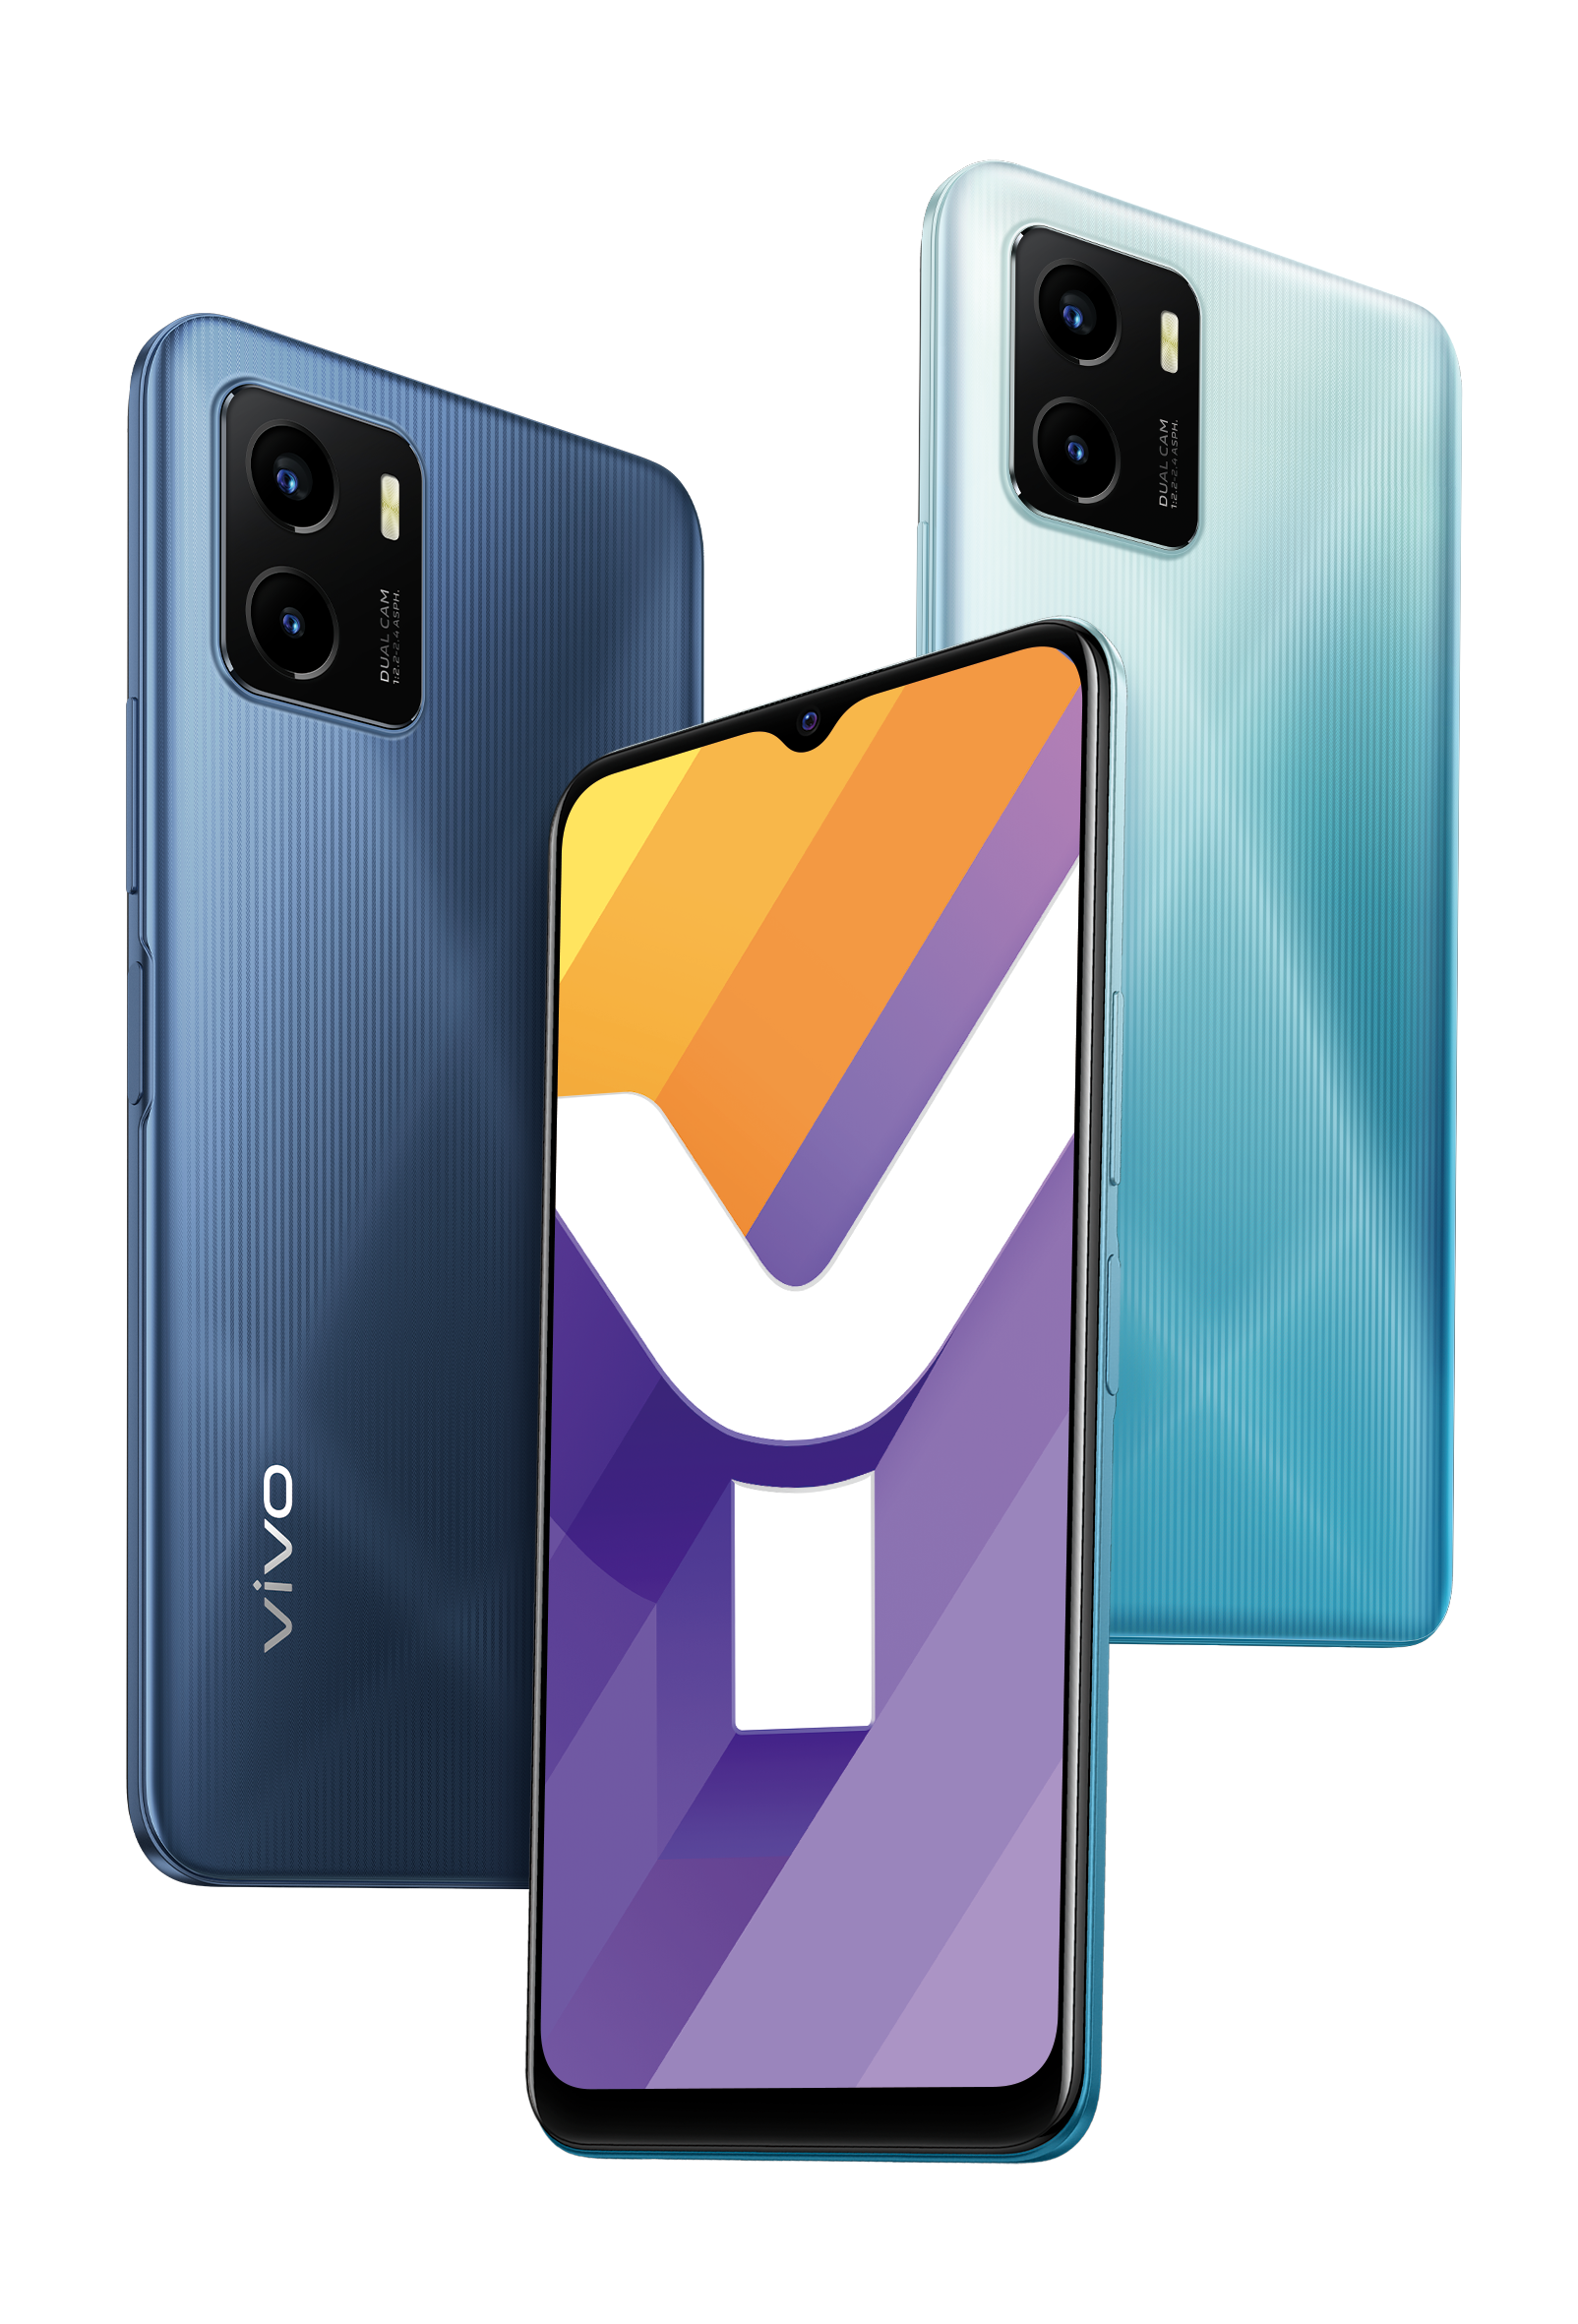 Điện thoại Vivo Y15s (3+32GB) xanh đen - Hàng Chính Hãng